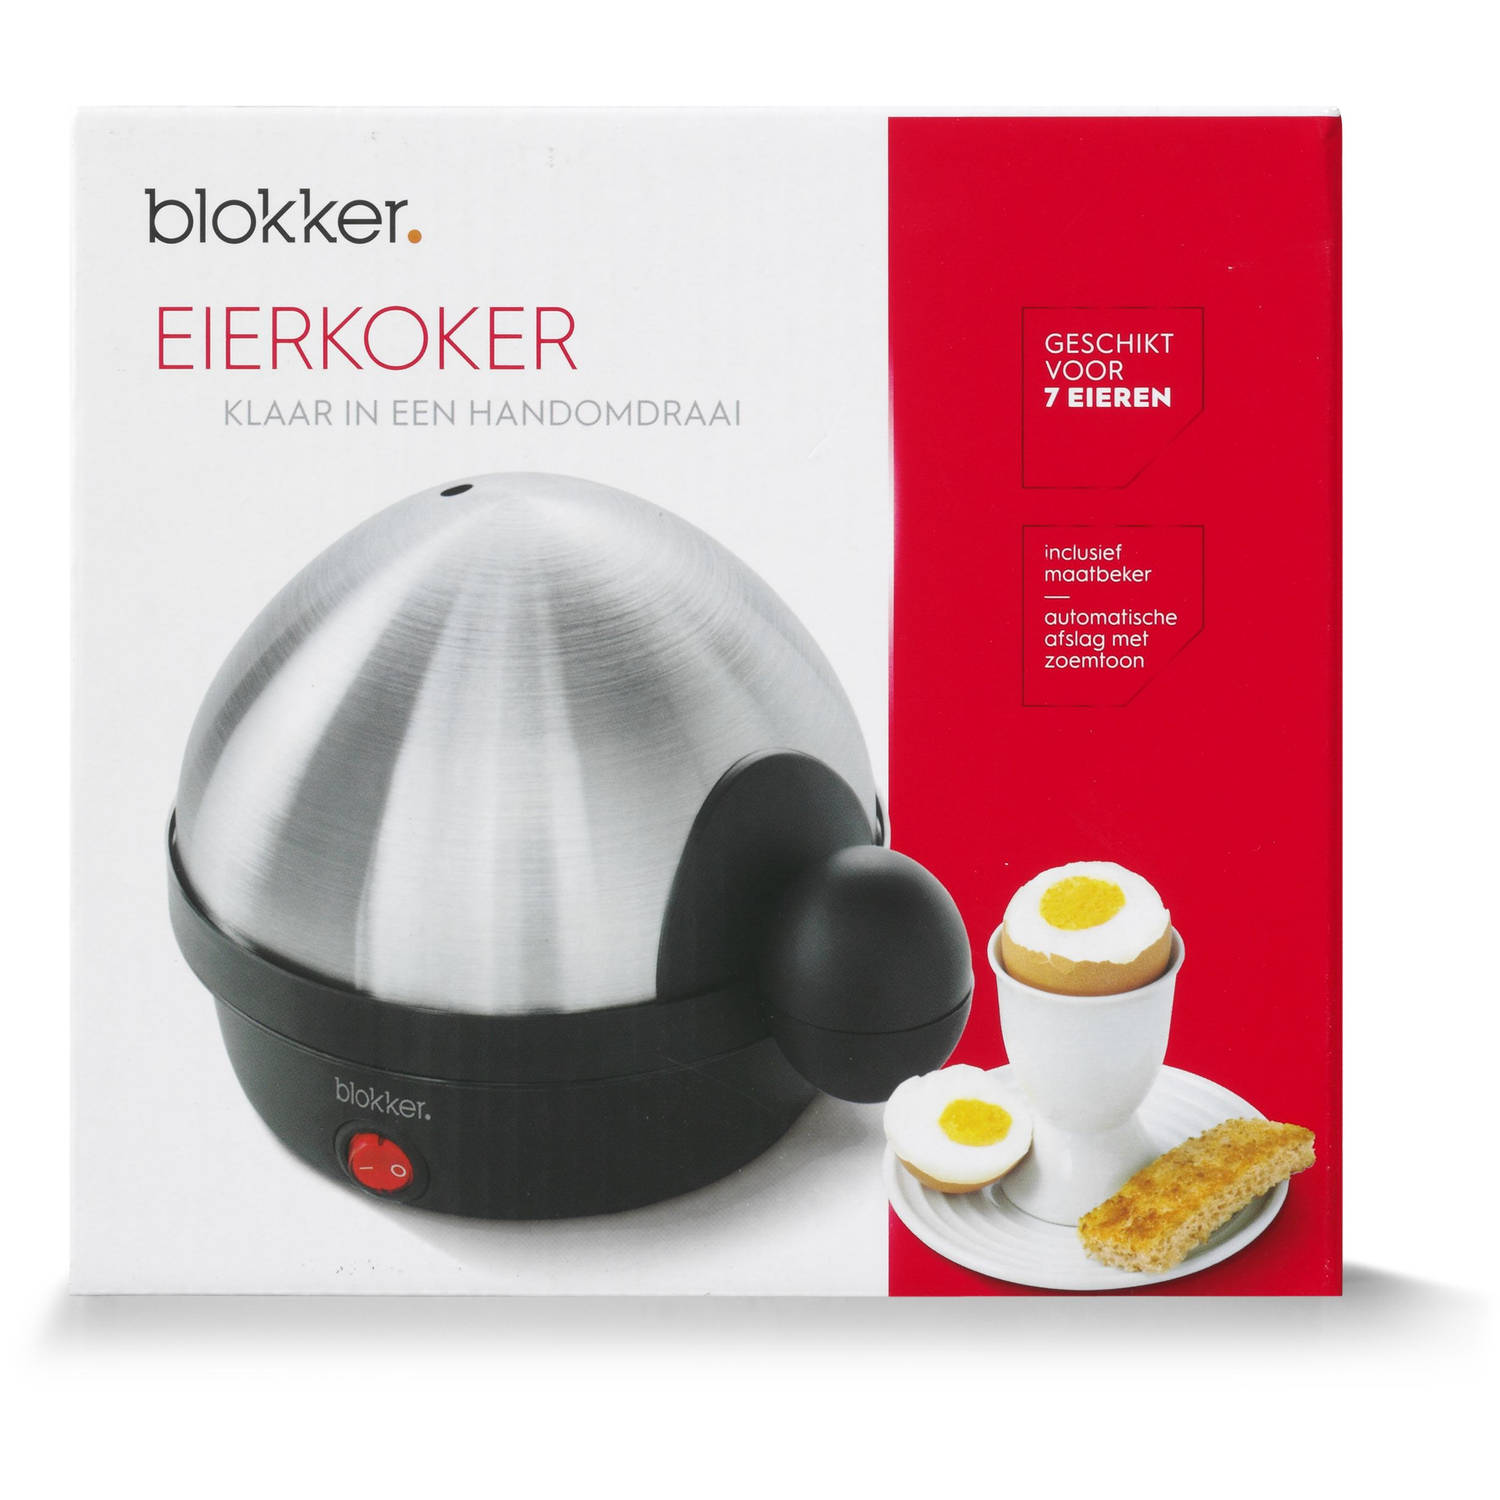 eierkoker BL-71001 Blokker